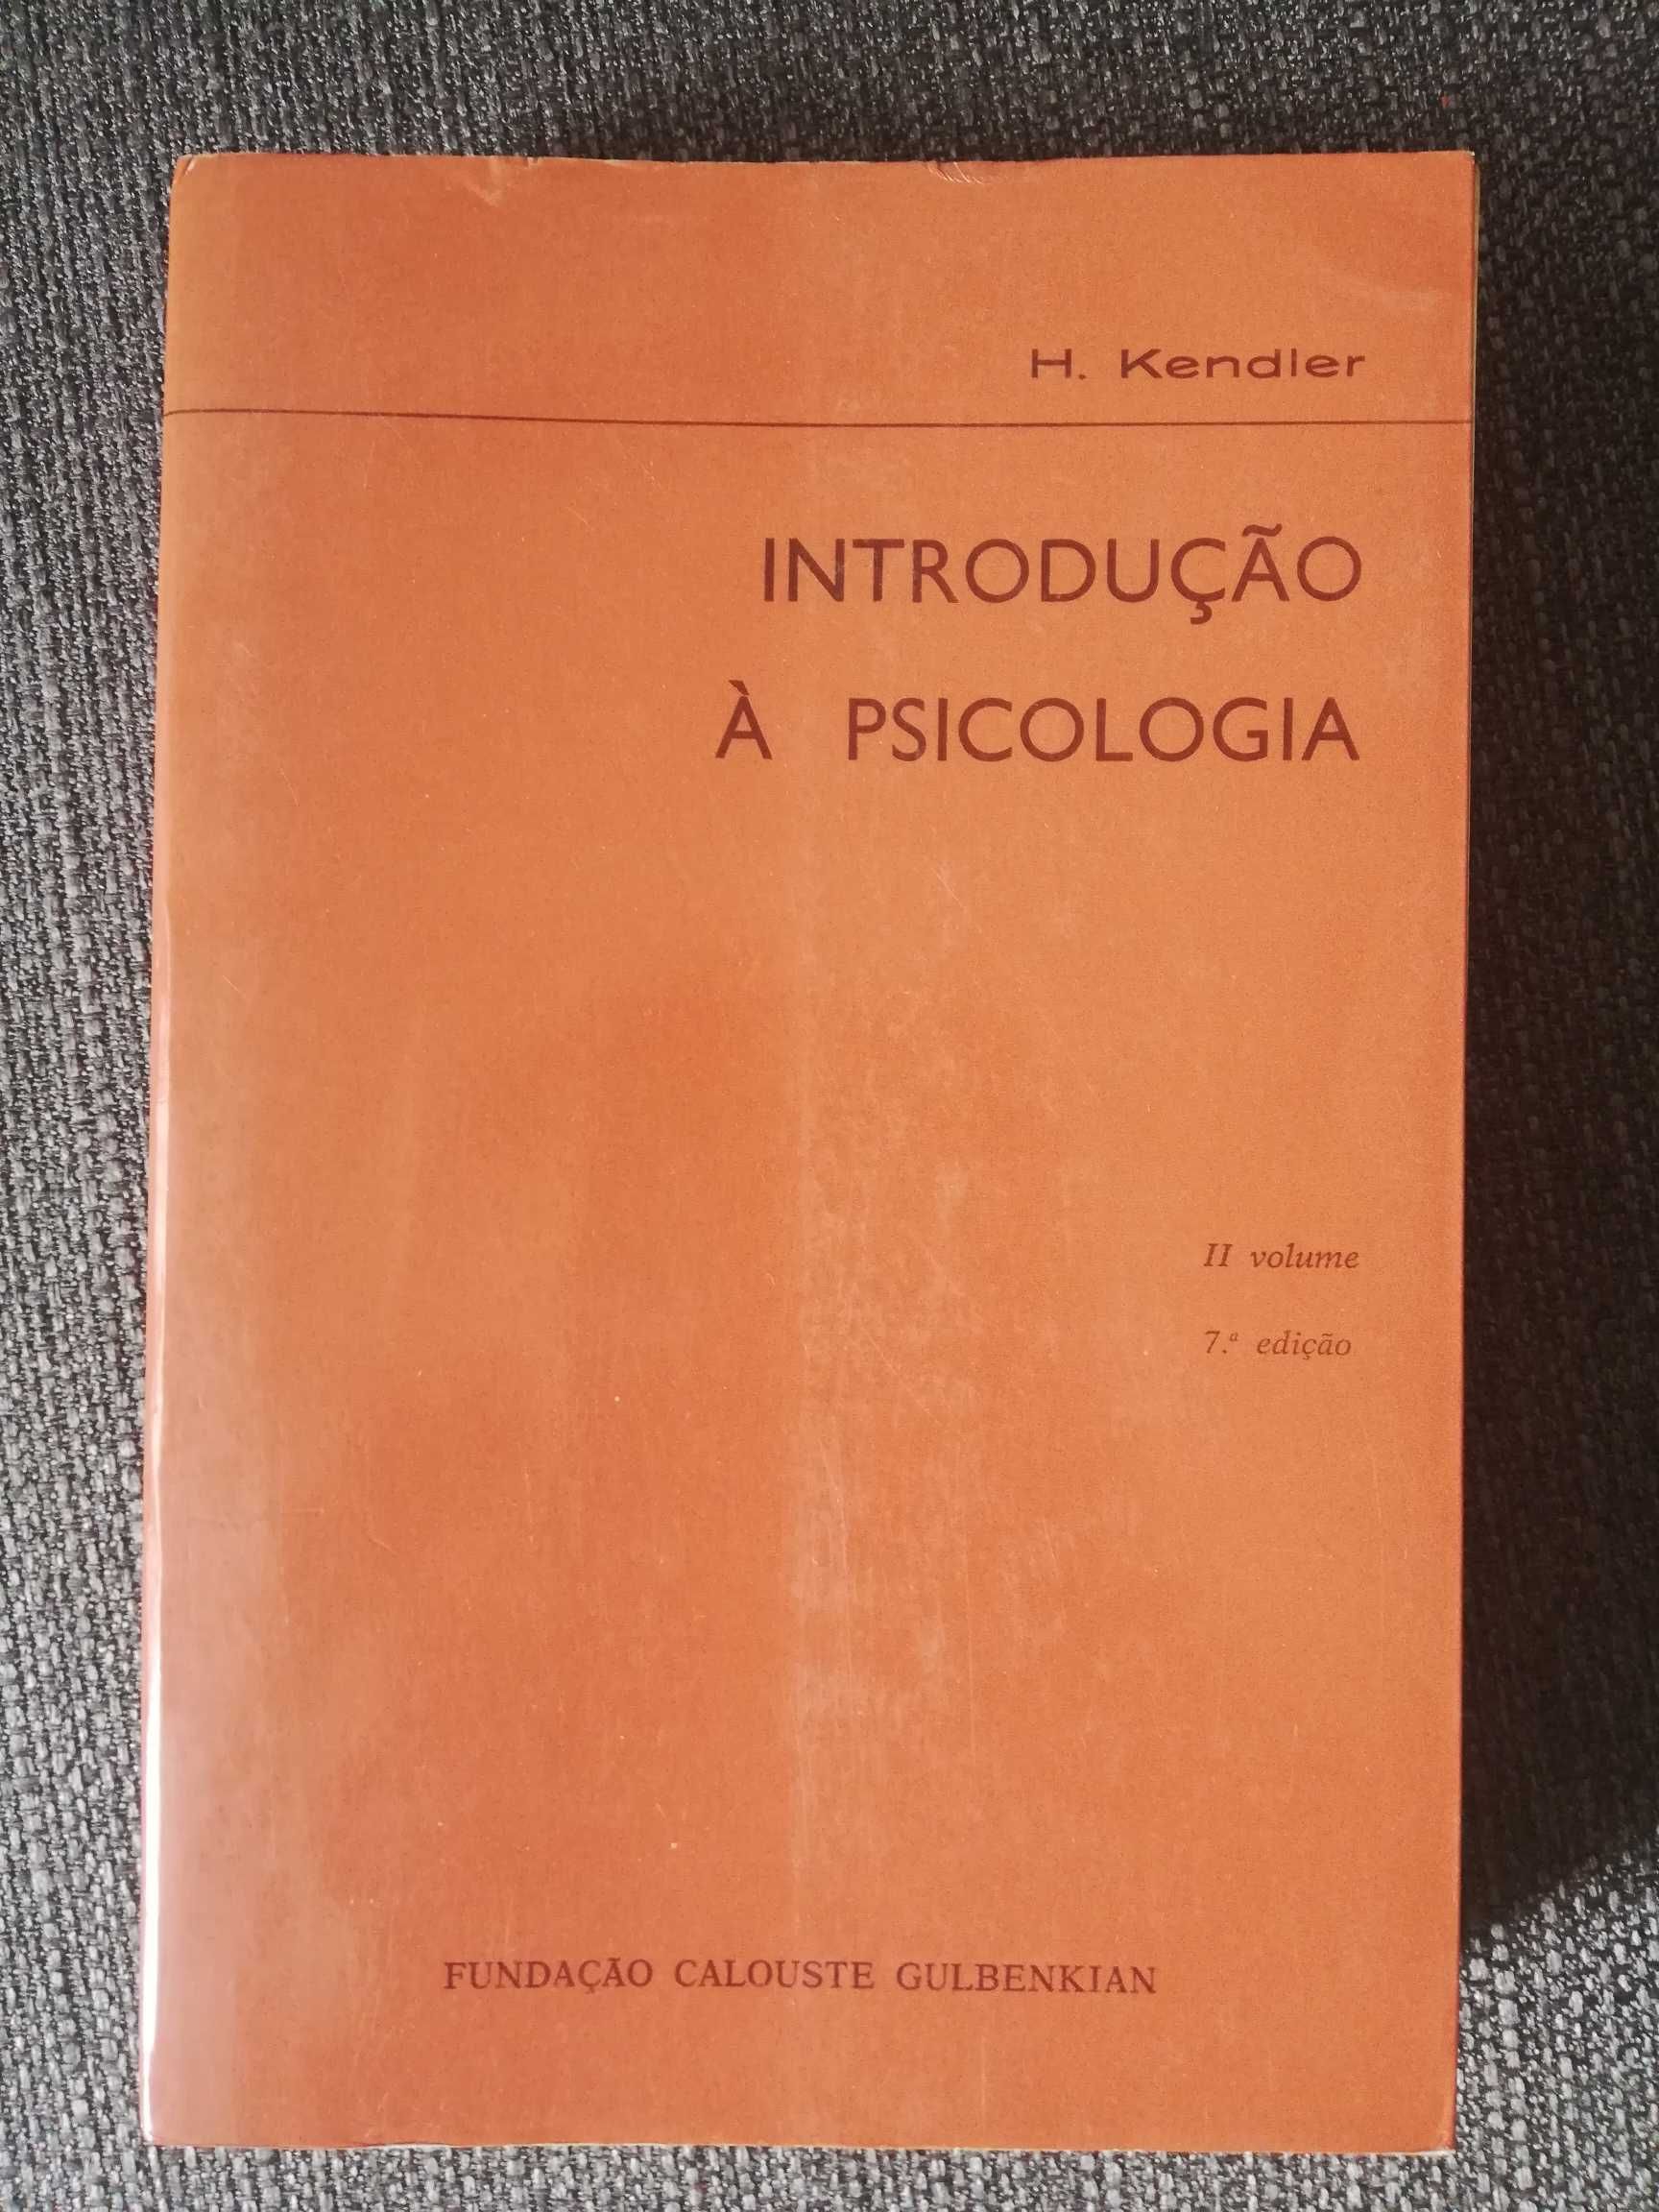 "Introdução à Psicologia" - 2 Volumes
de H. Kendler